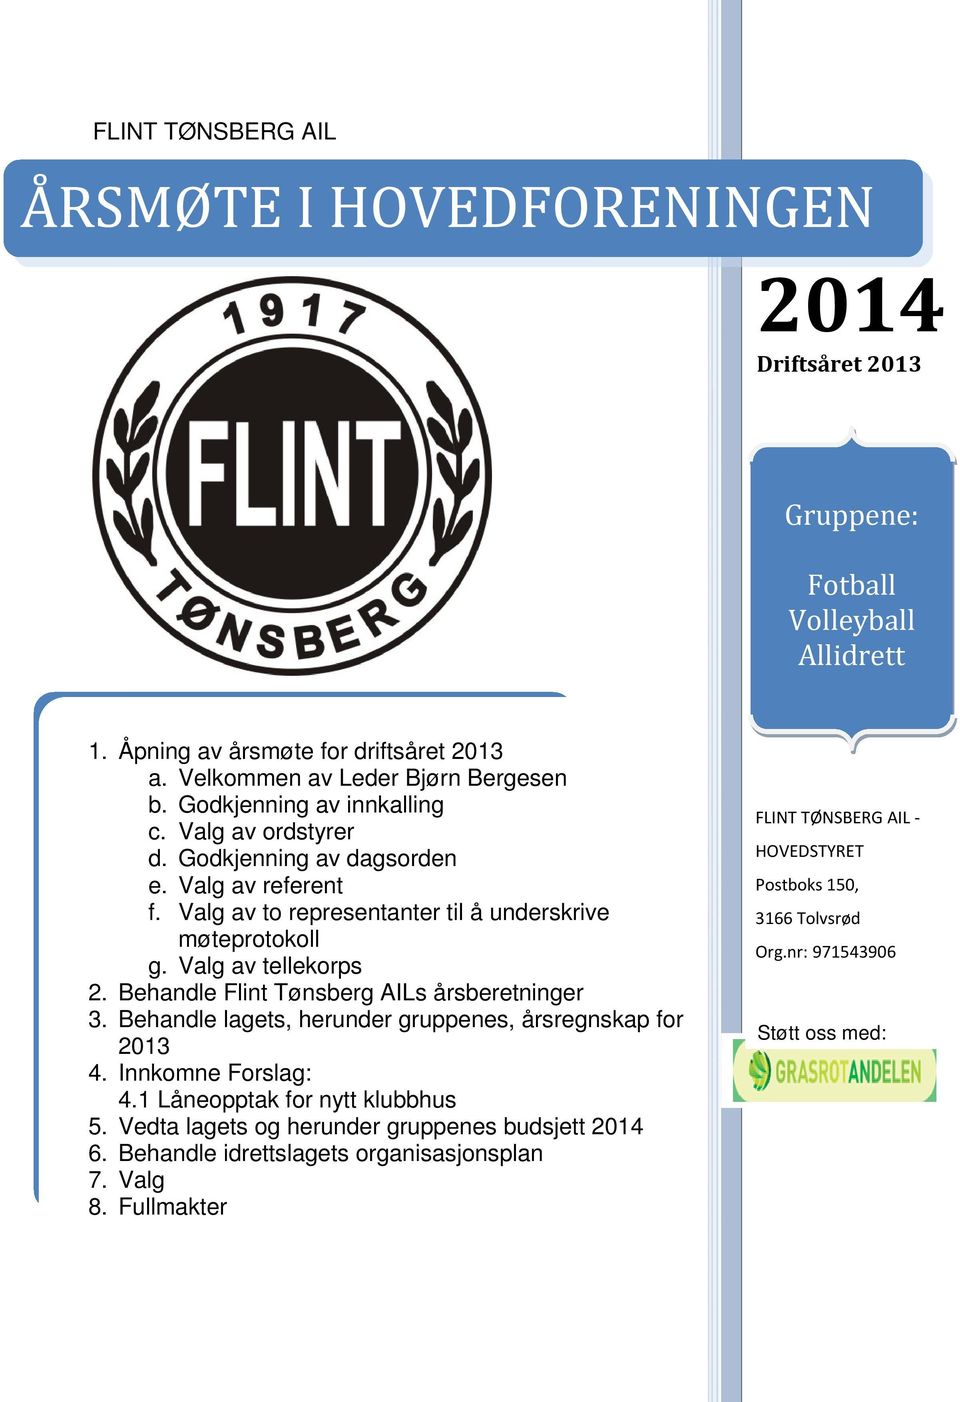 Behandle Flint Tønsberg AILs årsberetninger 3. Behandle lagets, herunder gruppenes, årsregnskap for 2013 4. Innkomne Forslag: 4.1 Låneopptak for nytt klubbhus 5.